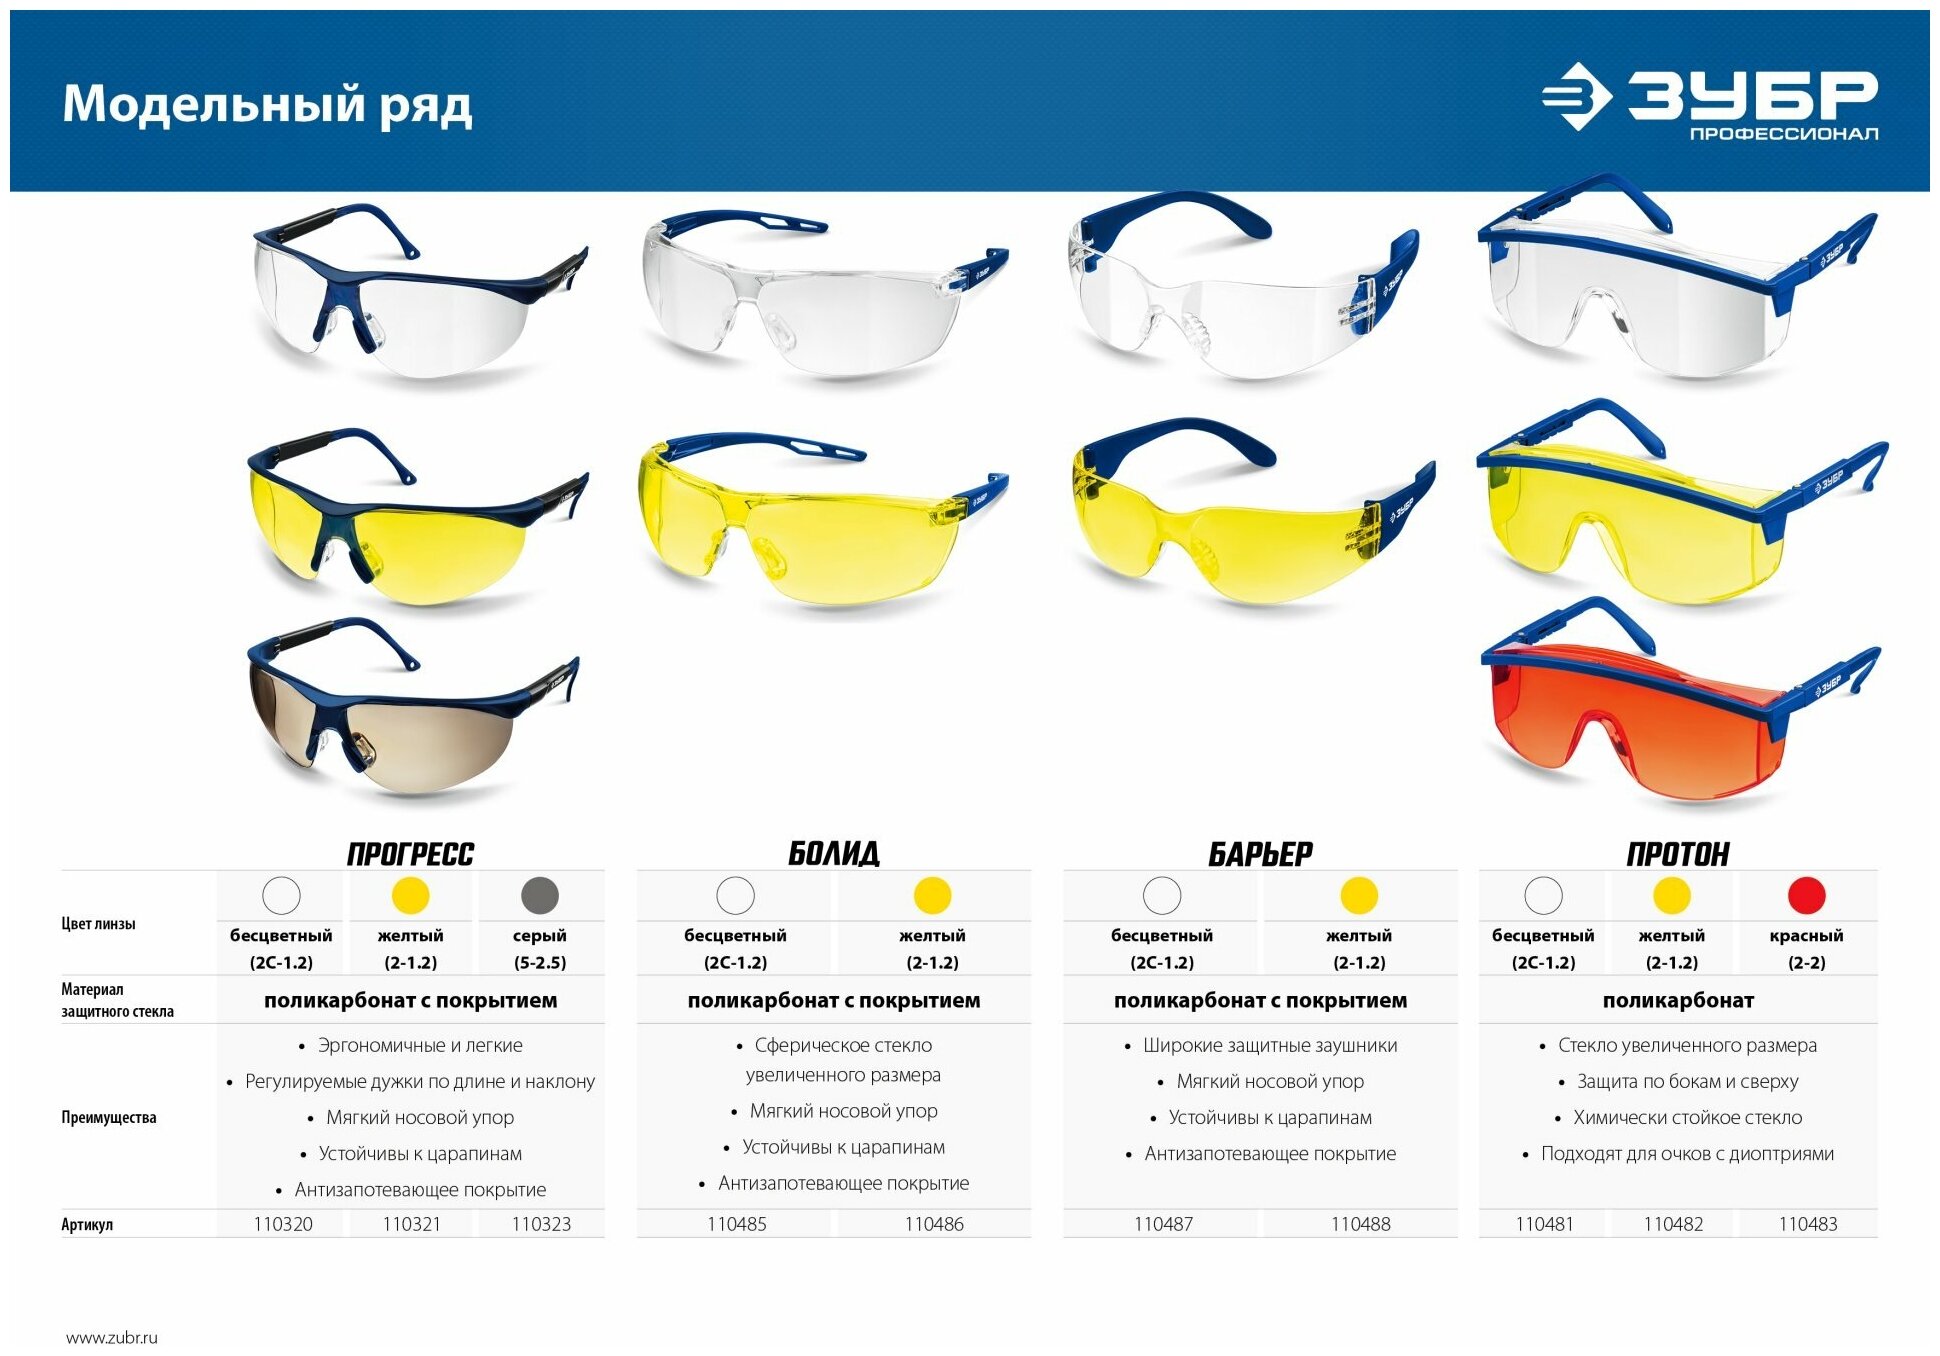 ЗУБР болид, открытого типа, прозрачные, сферические линзы, устойчивые к запотеванию, защитные очки, Профессионал (110485)